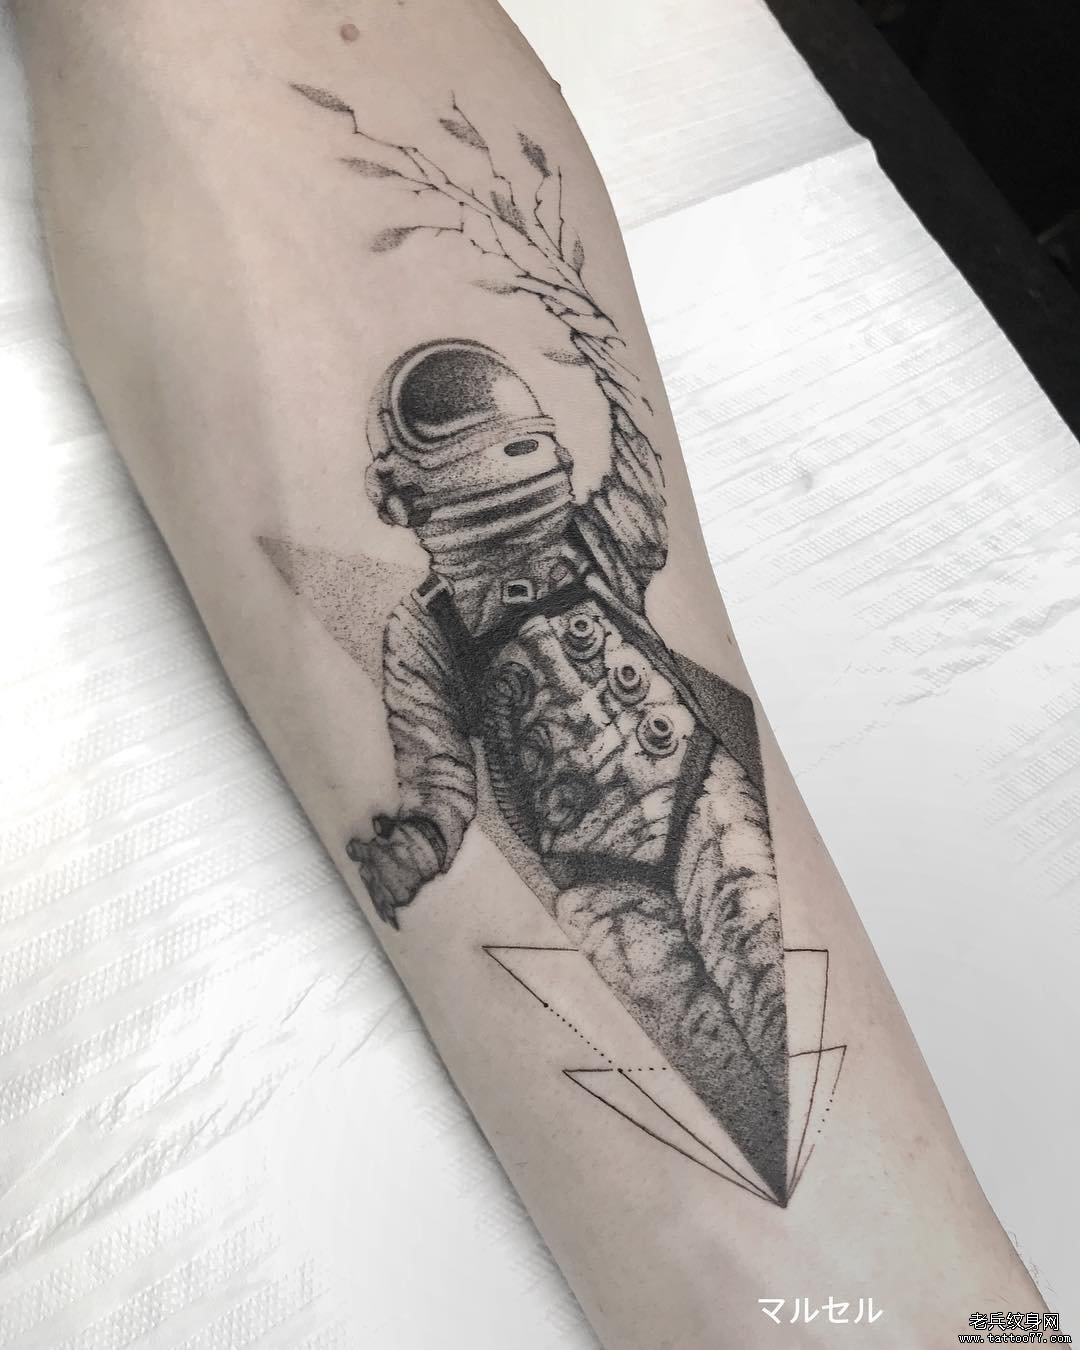 个性简笔点刺宇航员纹身